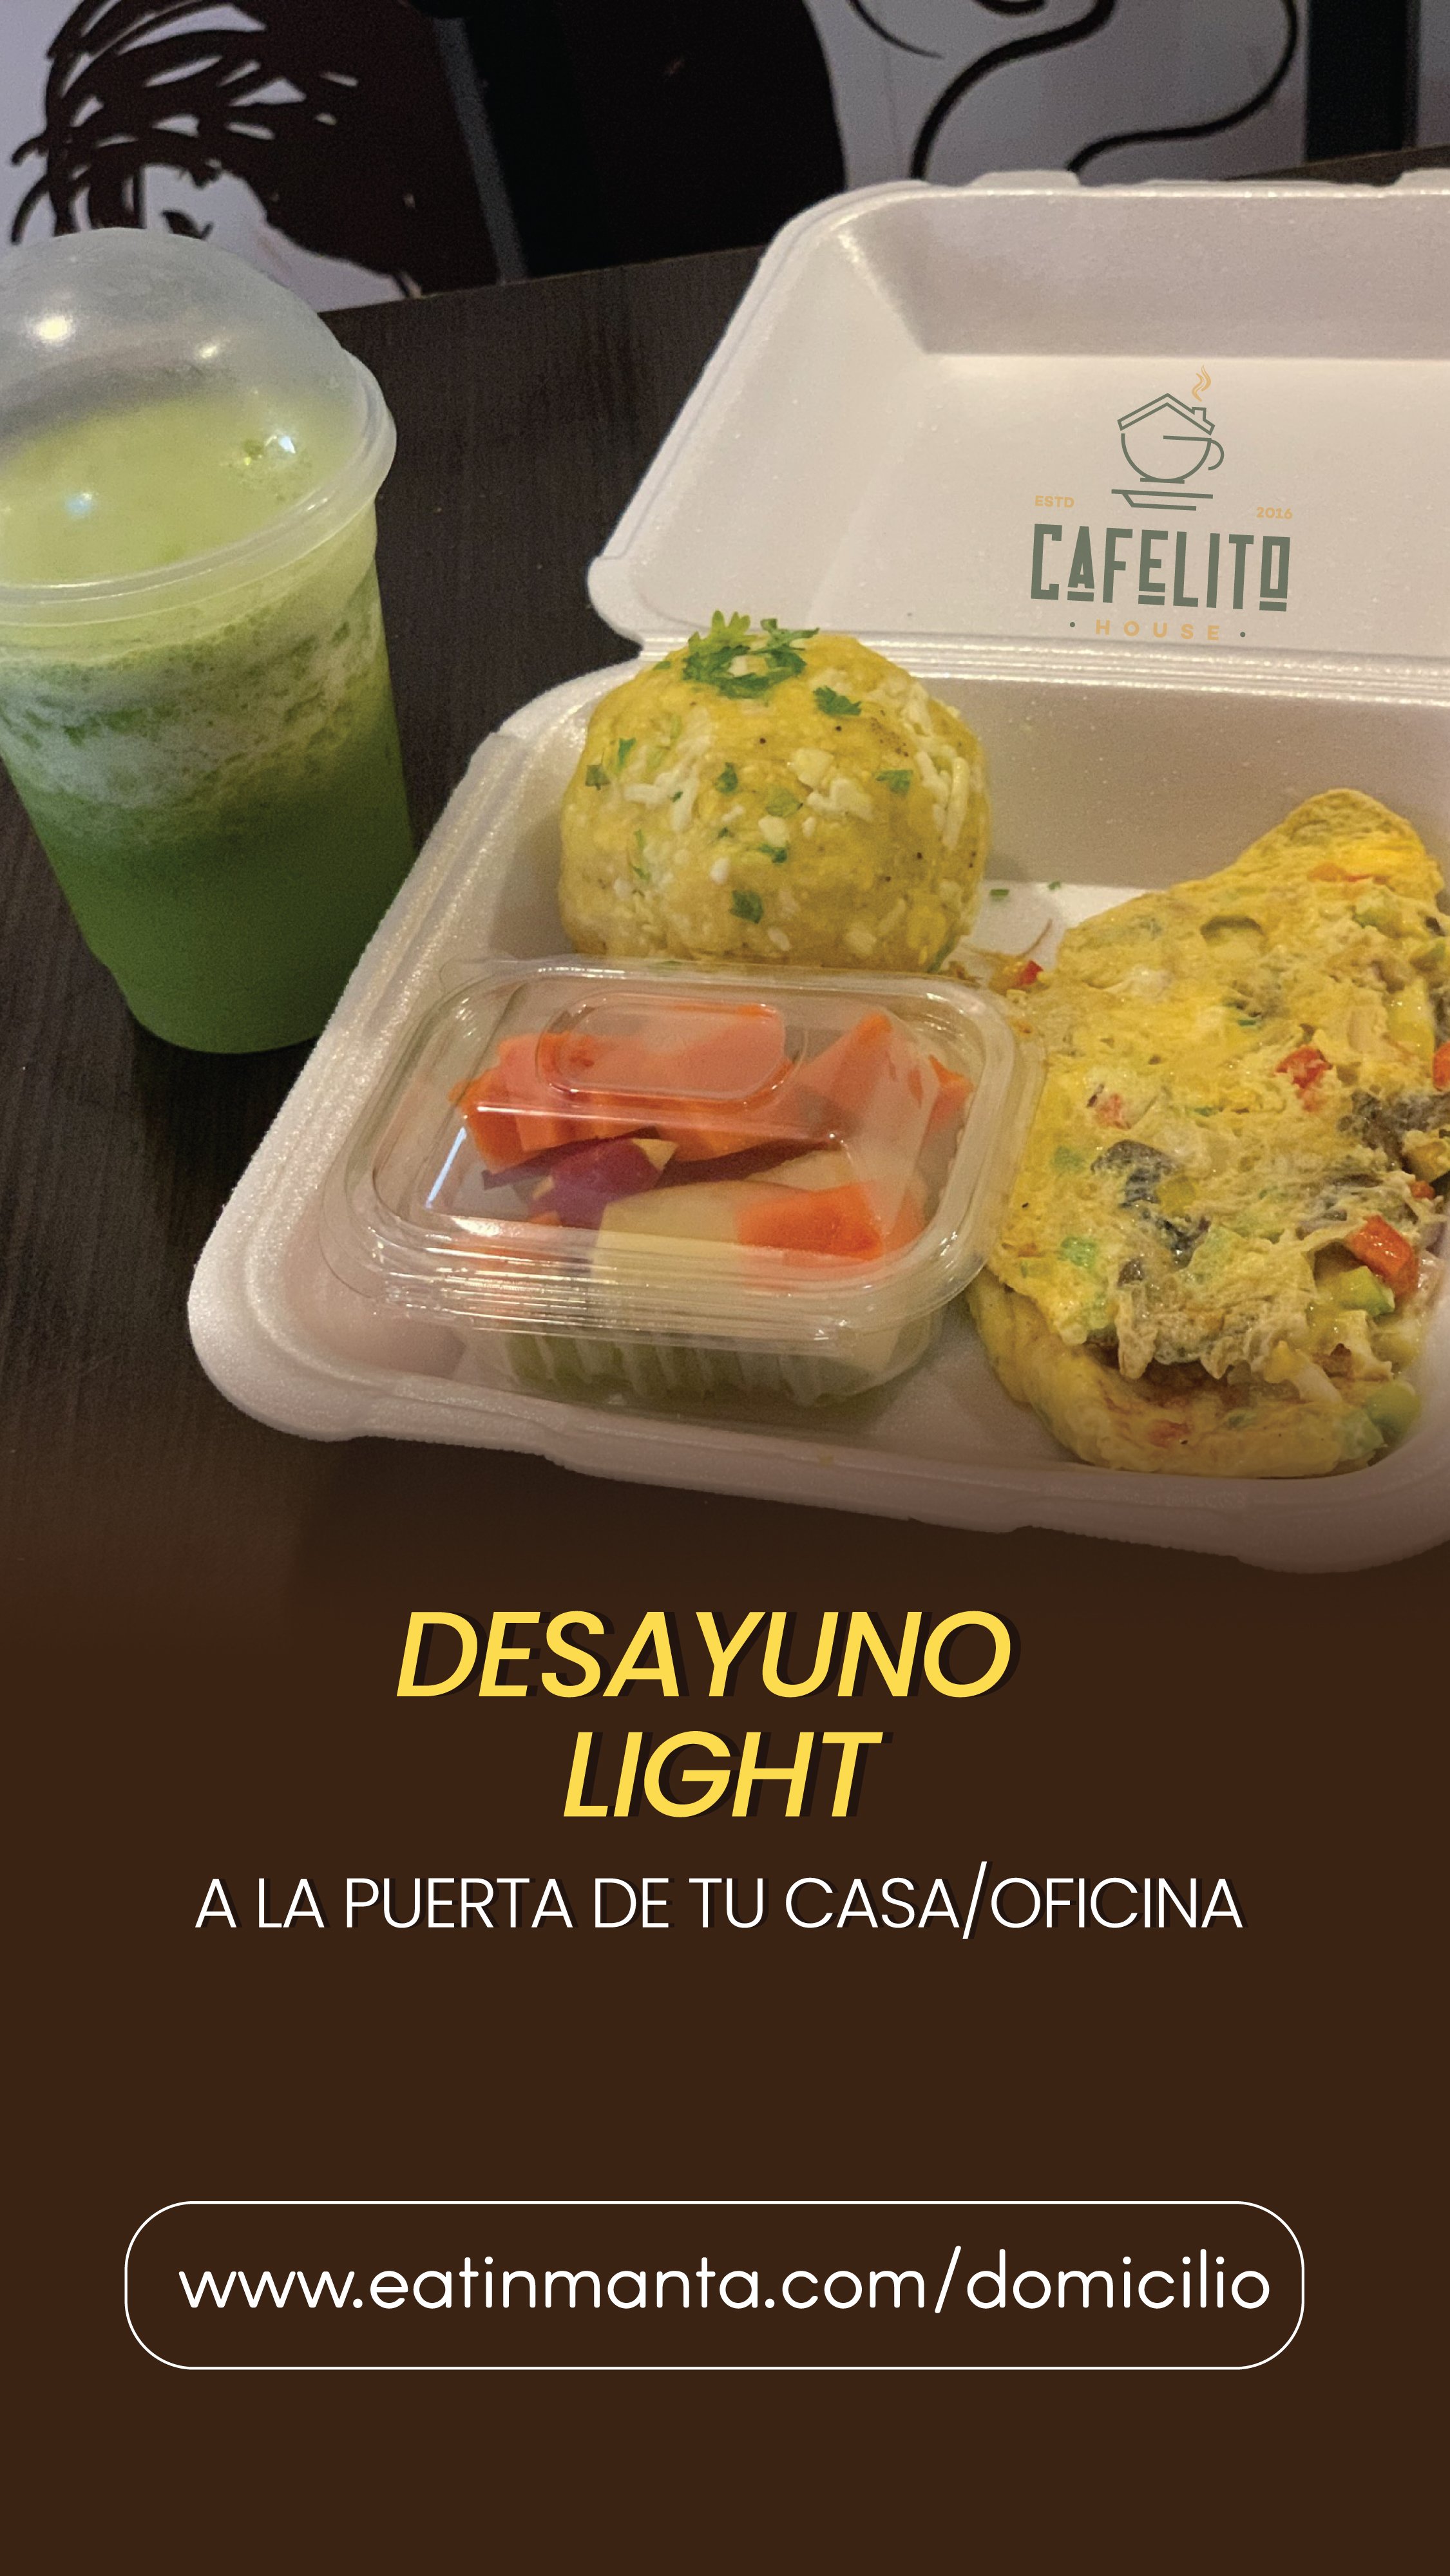 DESAYUNO Cafelito-03.jpg